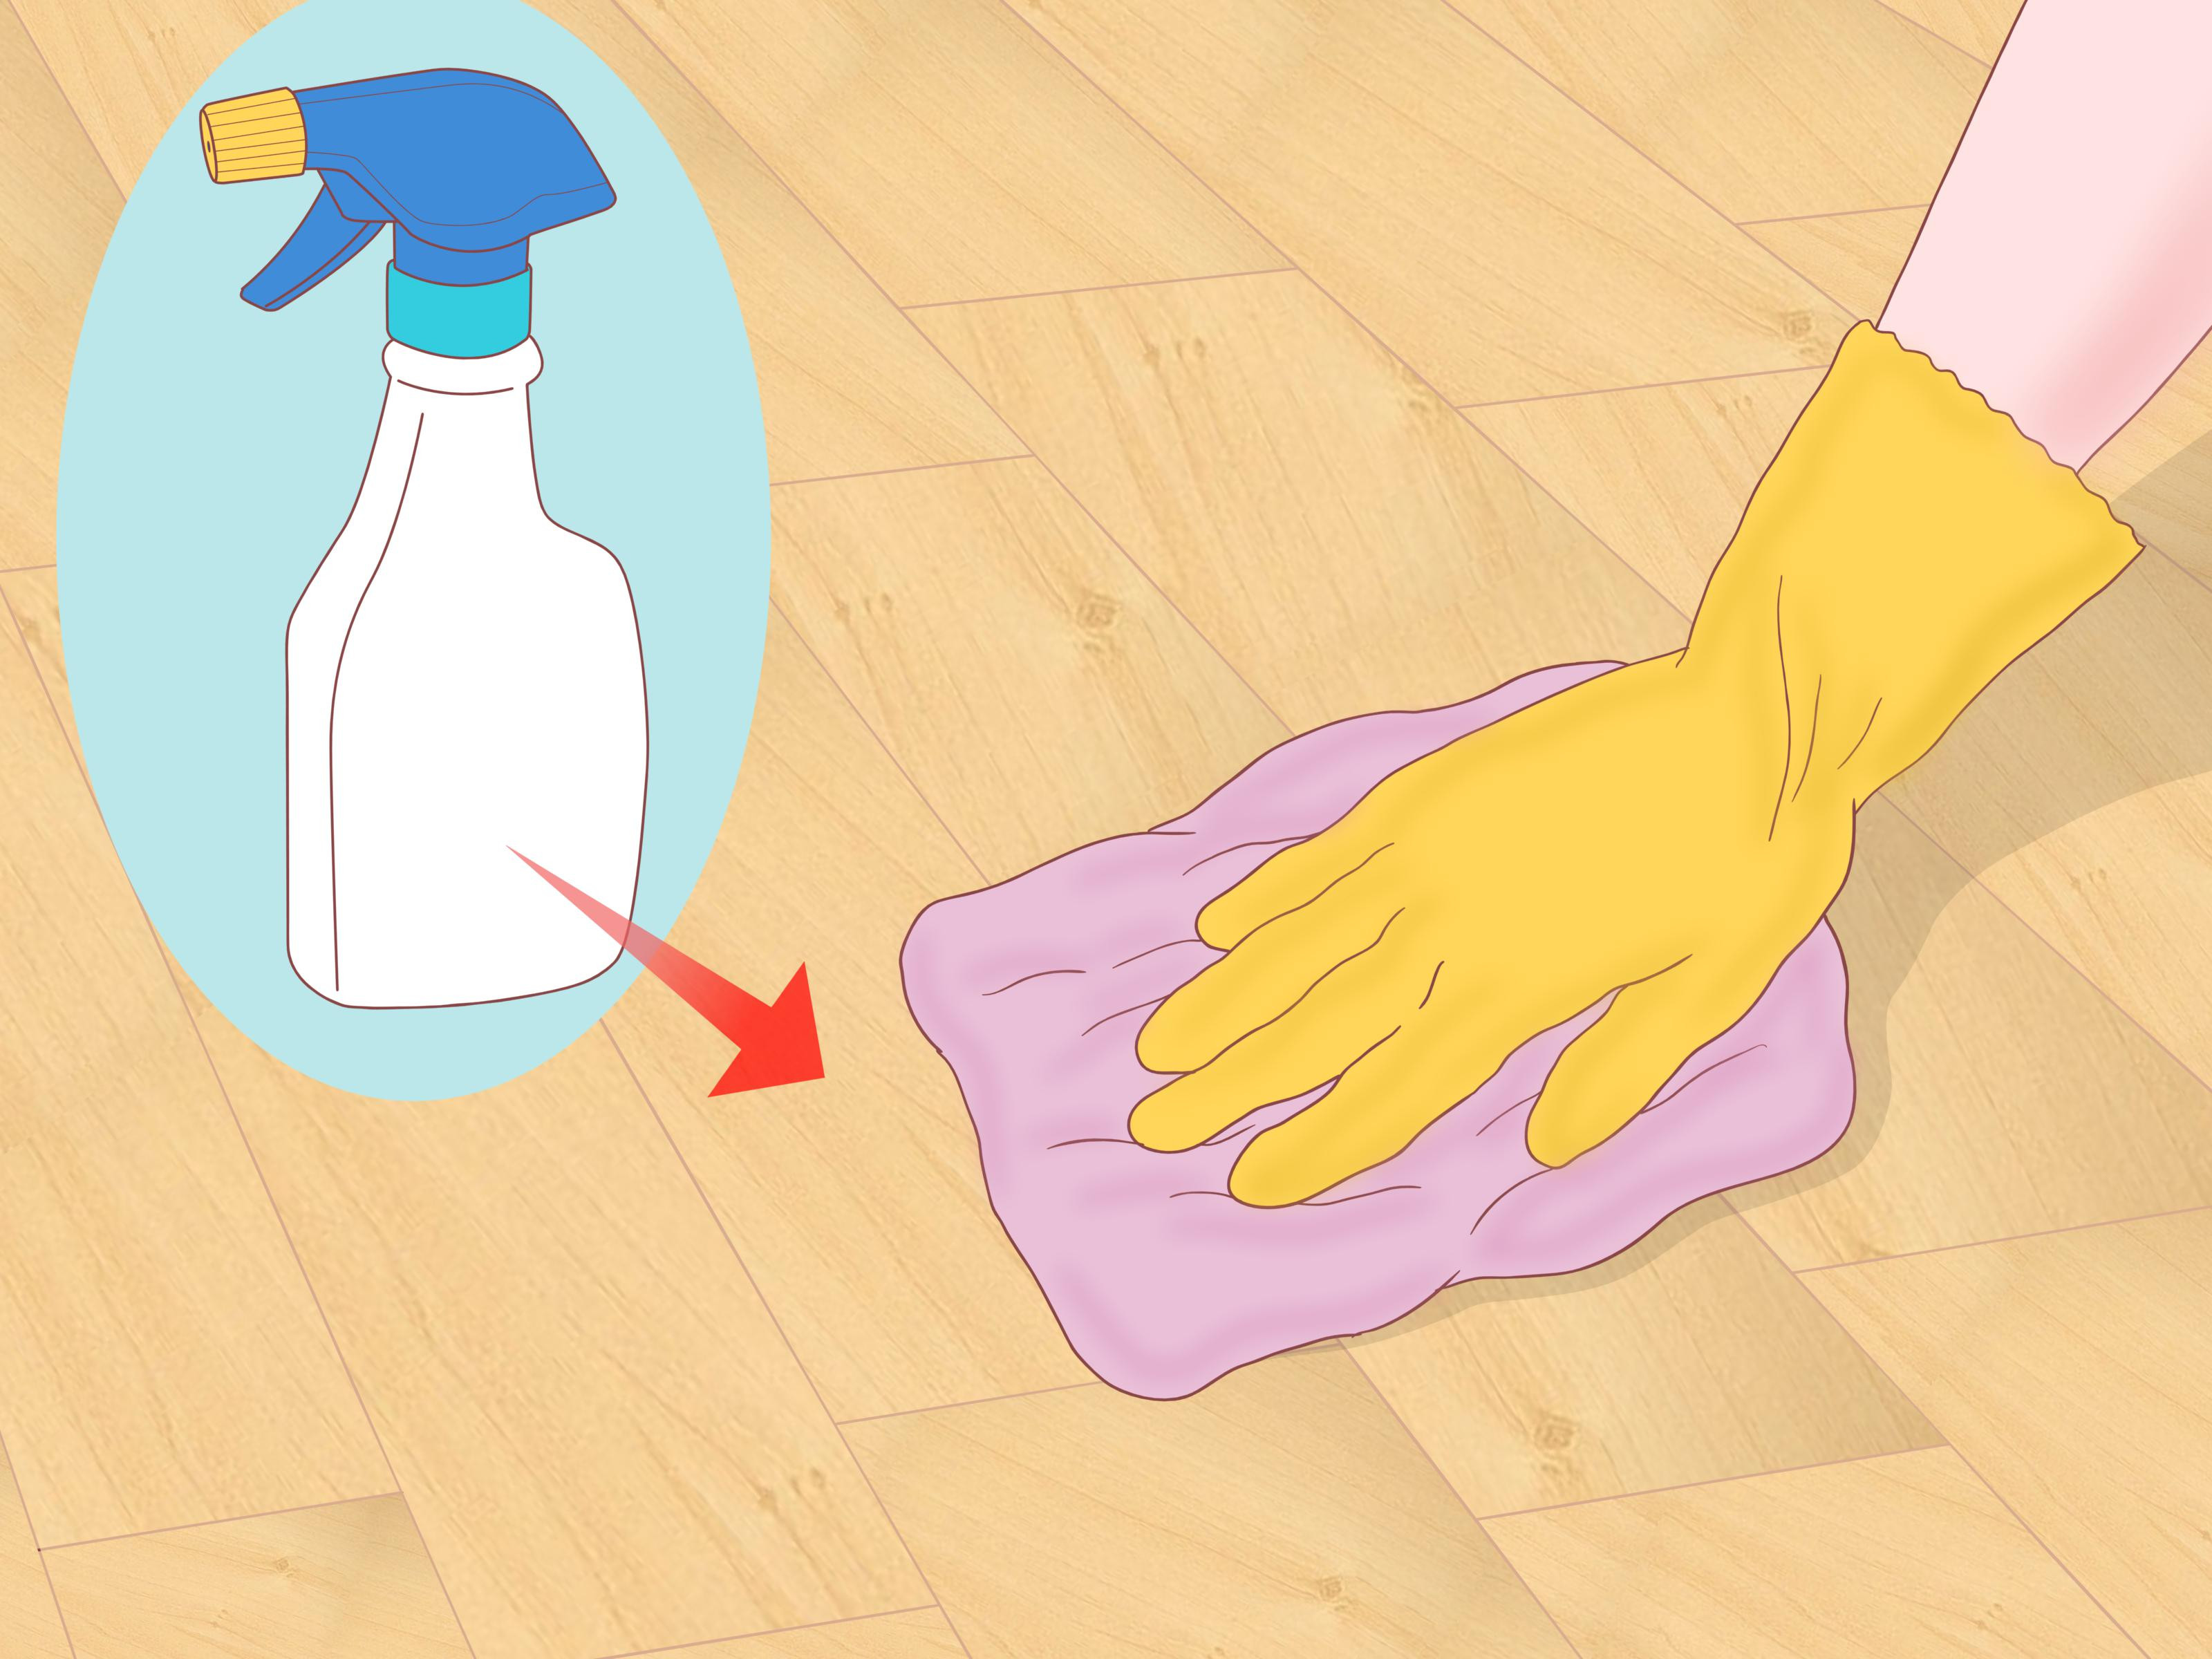 re waxing hardwood floors of 3 ways to clean parquet floors wikihow within clean parquet floors step 12